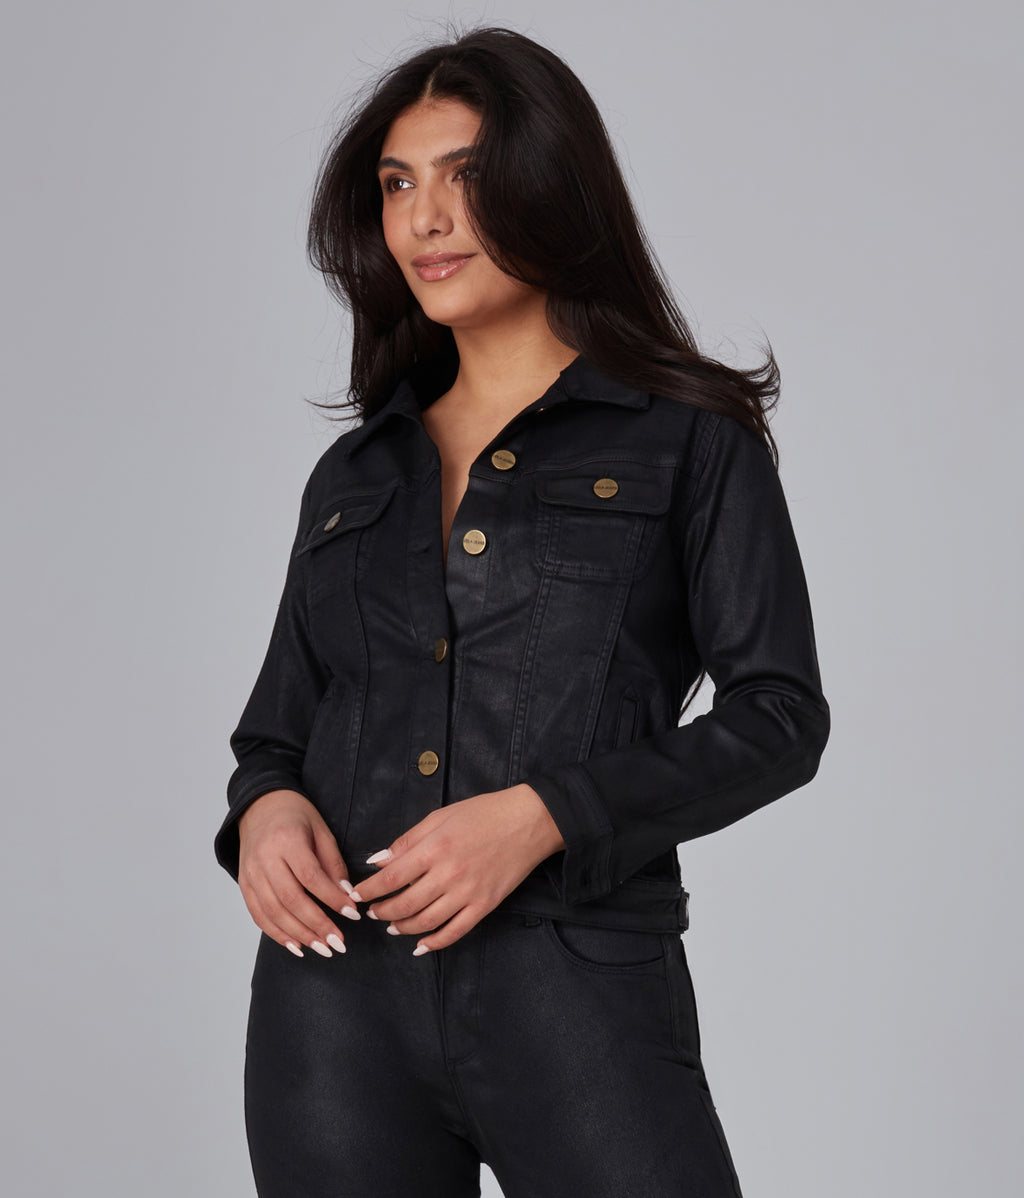 Lola Jeans Gabriella-LBD Classic Denim Jacket